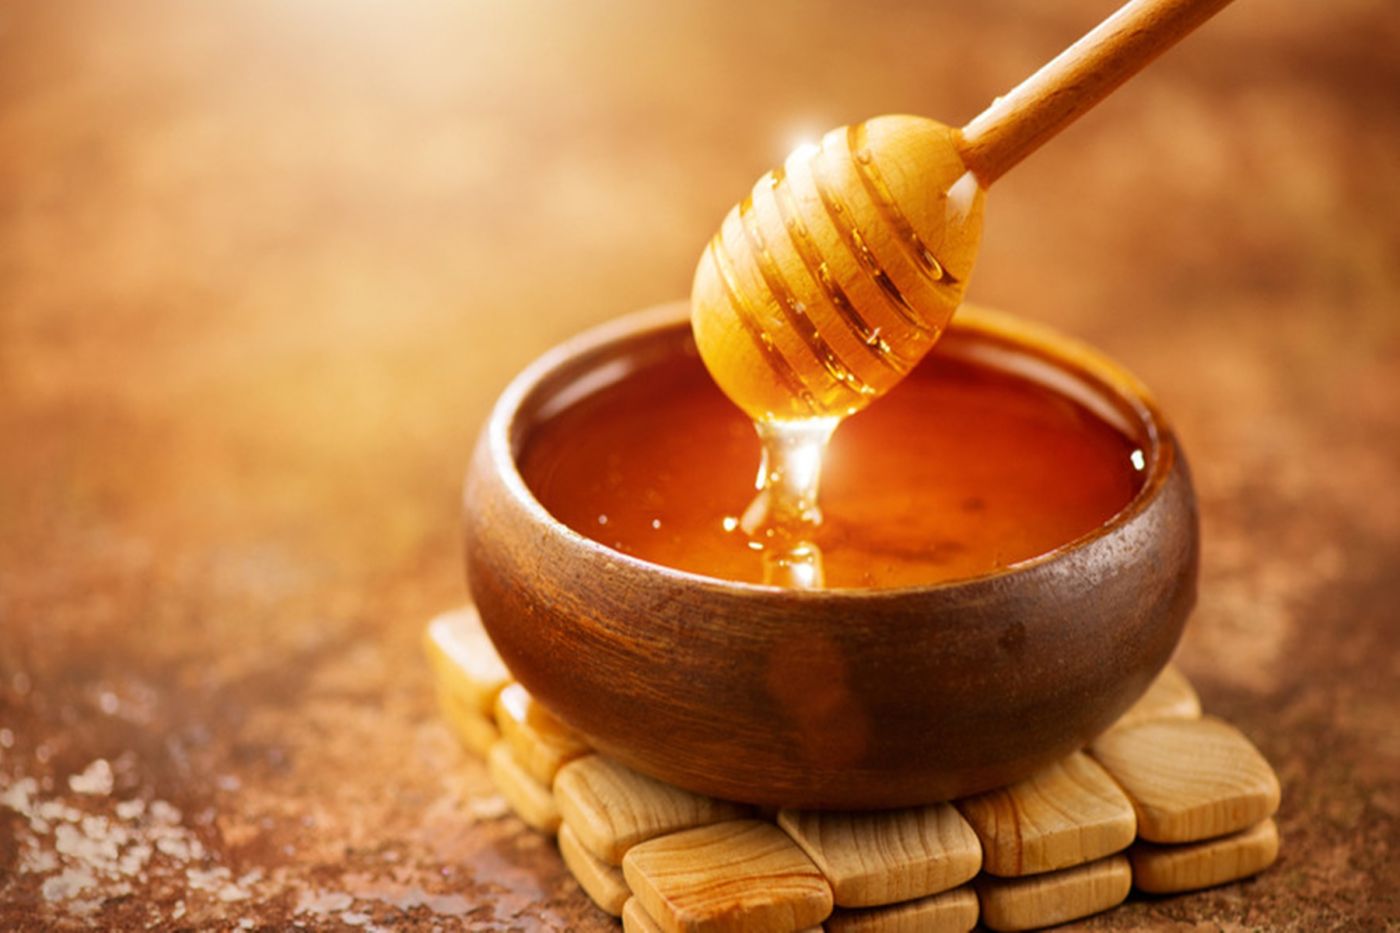 Αυτά είναι τα οφέλη που έχει για την υγεία το μέλι Μανούκα (βίντεο)